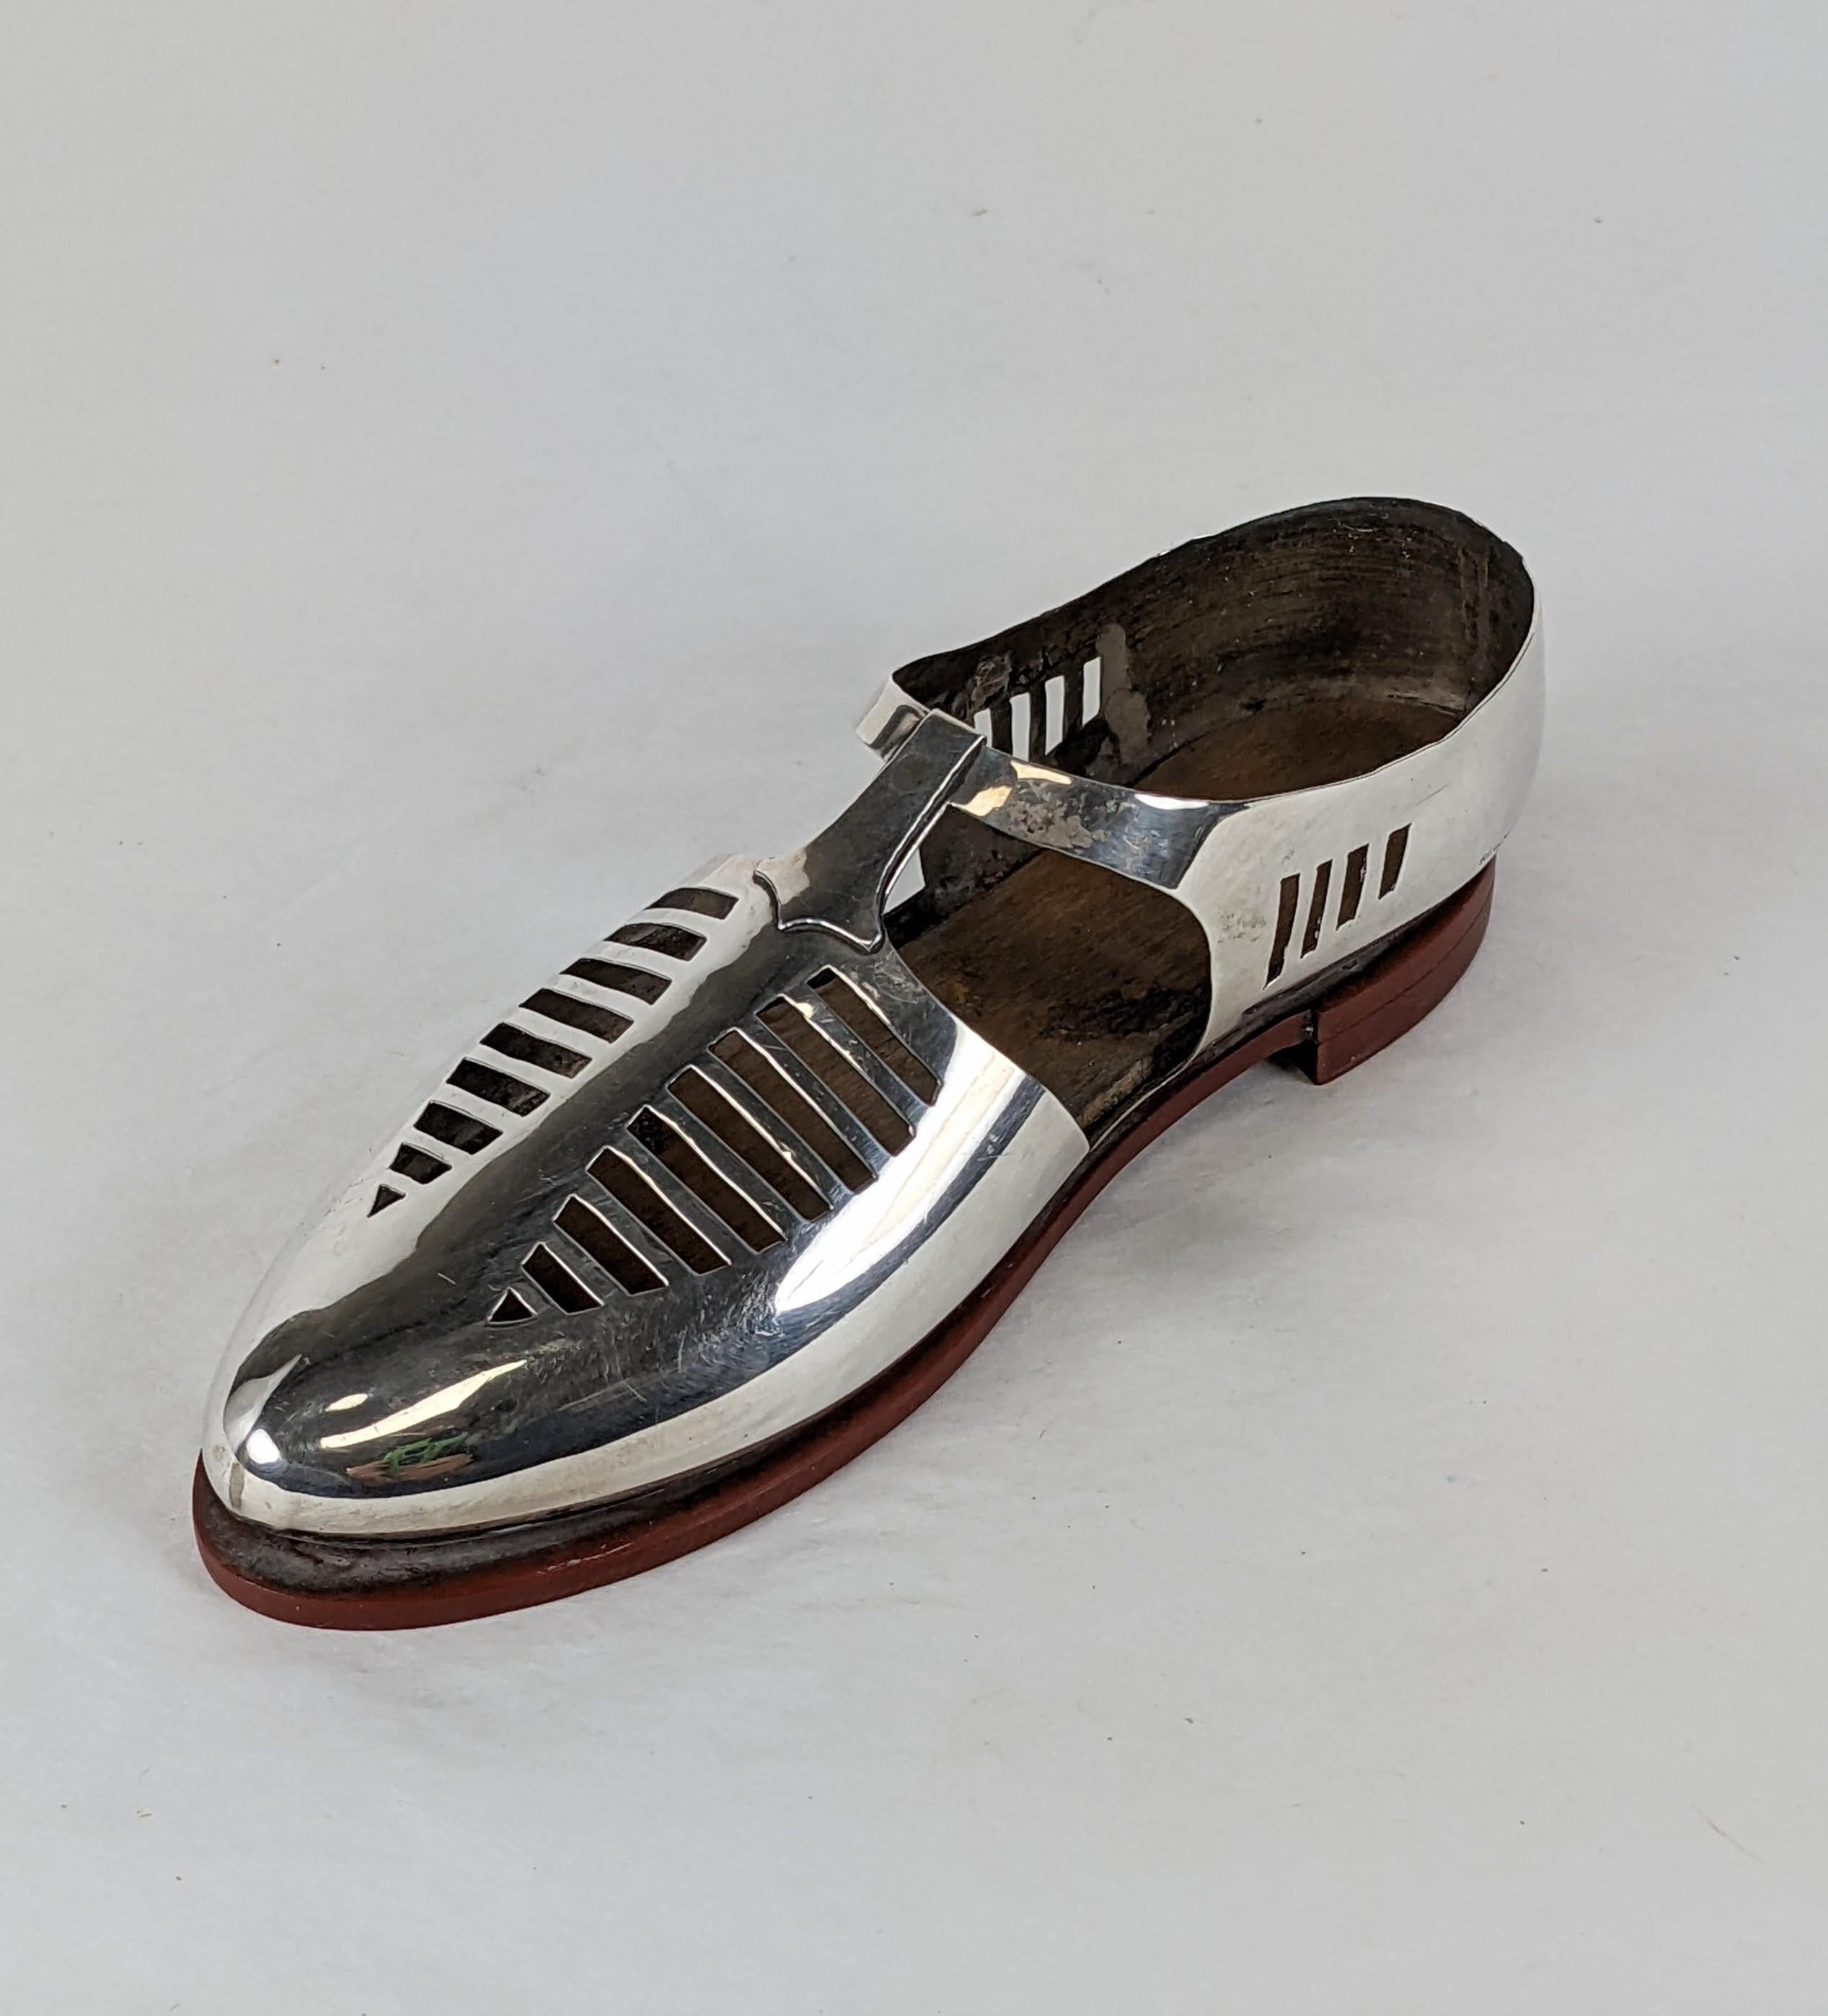 Charmanter Sterling Art Deco Schuh aus den 1920er Jahren. Ursprünglich als Nadelkissen für den Gebrauch hergestellt, dient es jetzt als Dekorationsobjekt. Super ungewöhnliches T-Strap-Design aus Sterling mit holzgefütterter Bakelit-Sohle. Die